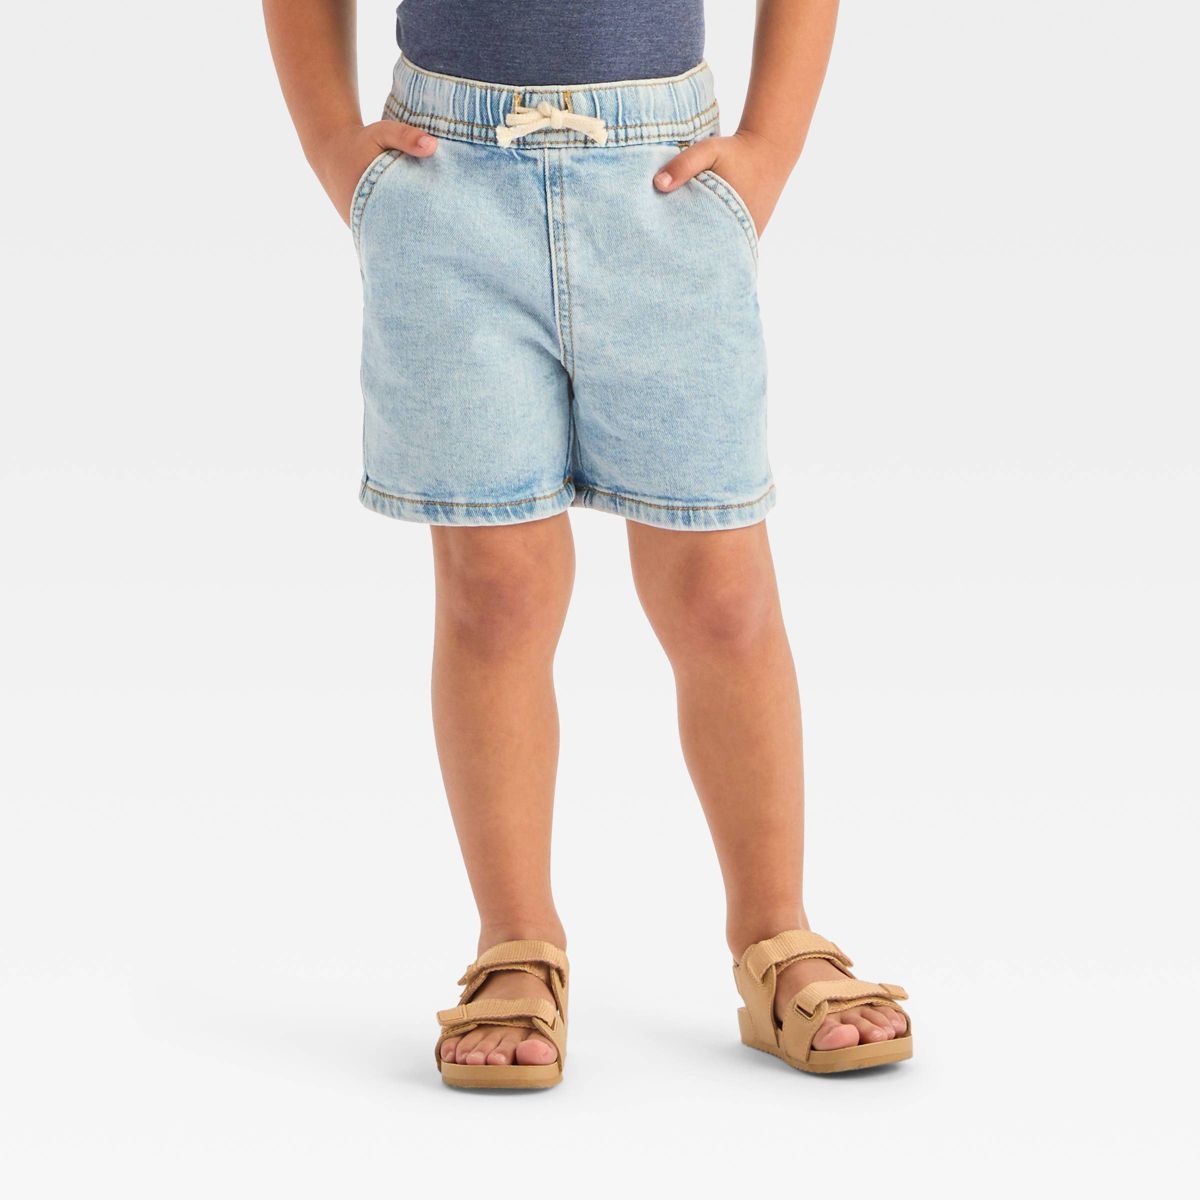 Toddler Boys' Pull-On Denim Above Knee Shorts - Cat & Jack™ Light Wash 3T | Target